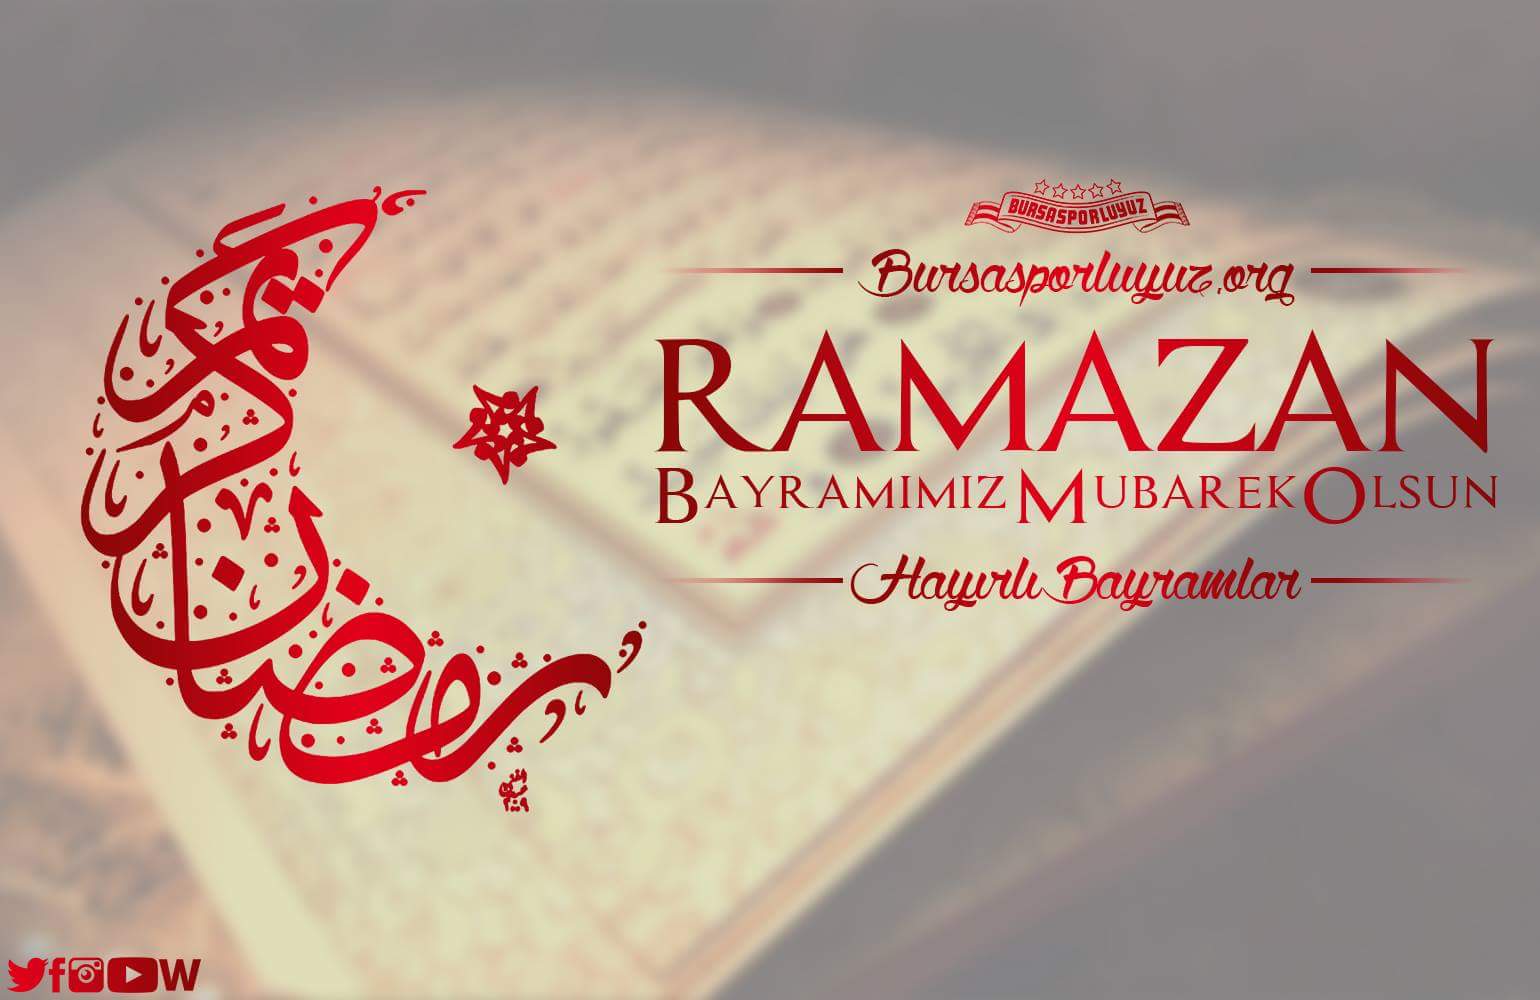 Поздравление с рамаданом на турецком языке. Рамазан байрам. Поздравление с Рамазаном на турецком. Ураза байрам на турецком. Рамадан на турецком языке.